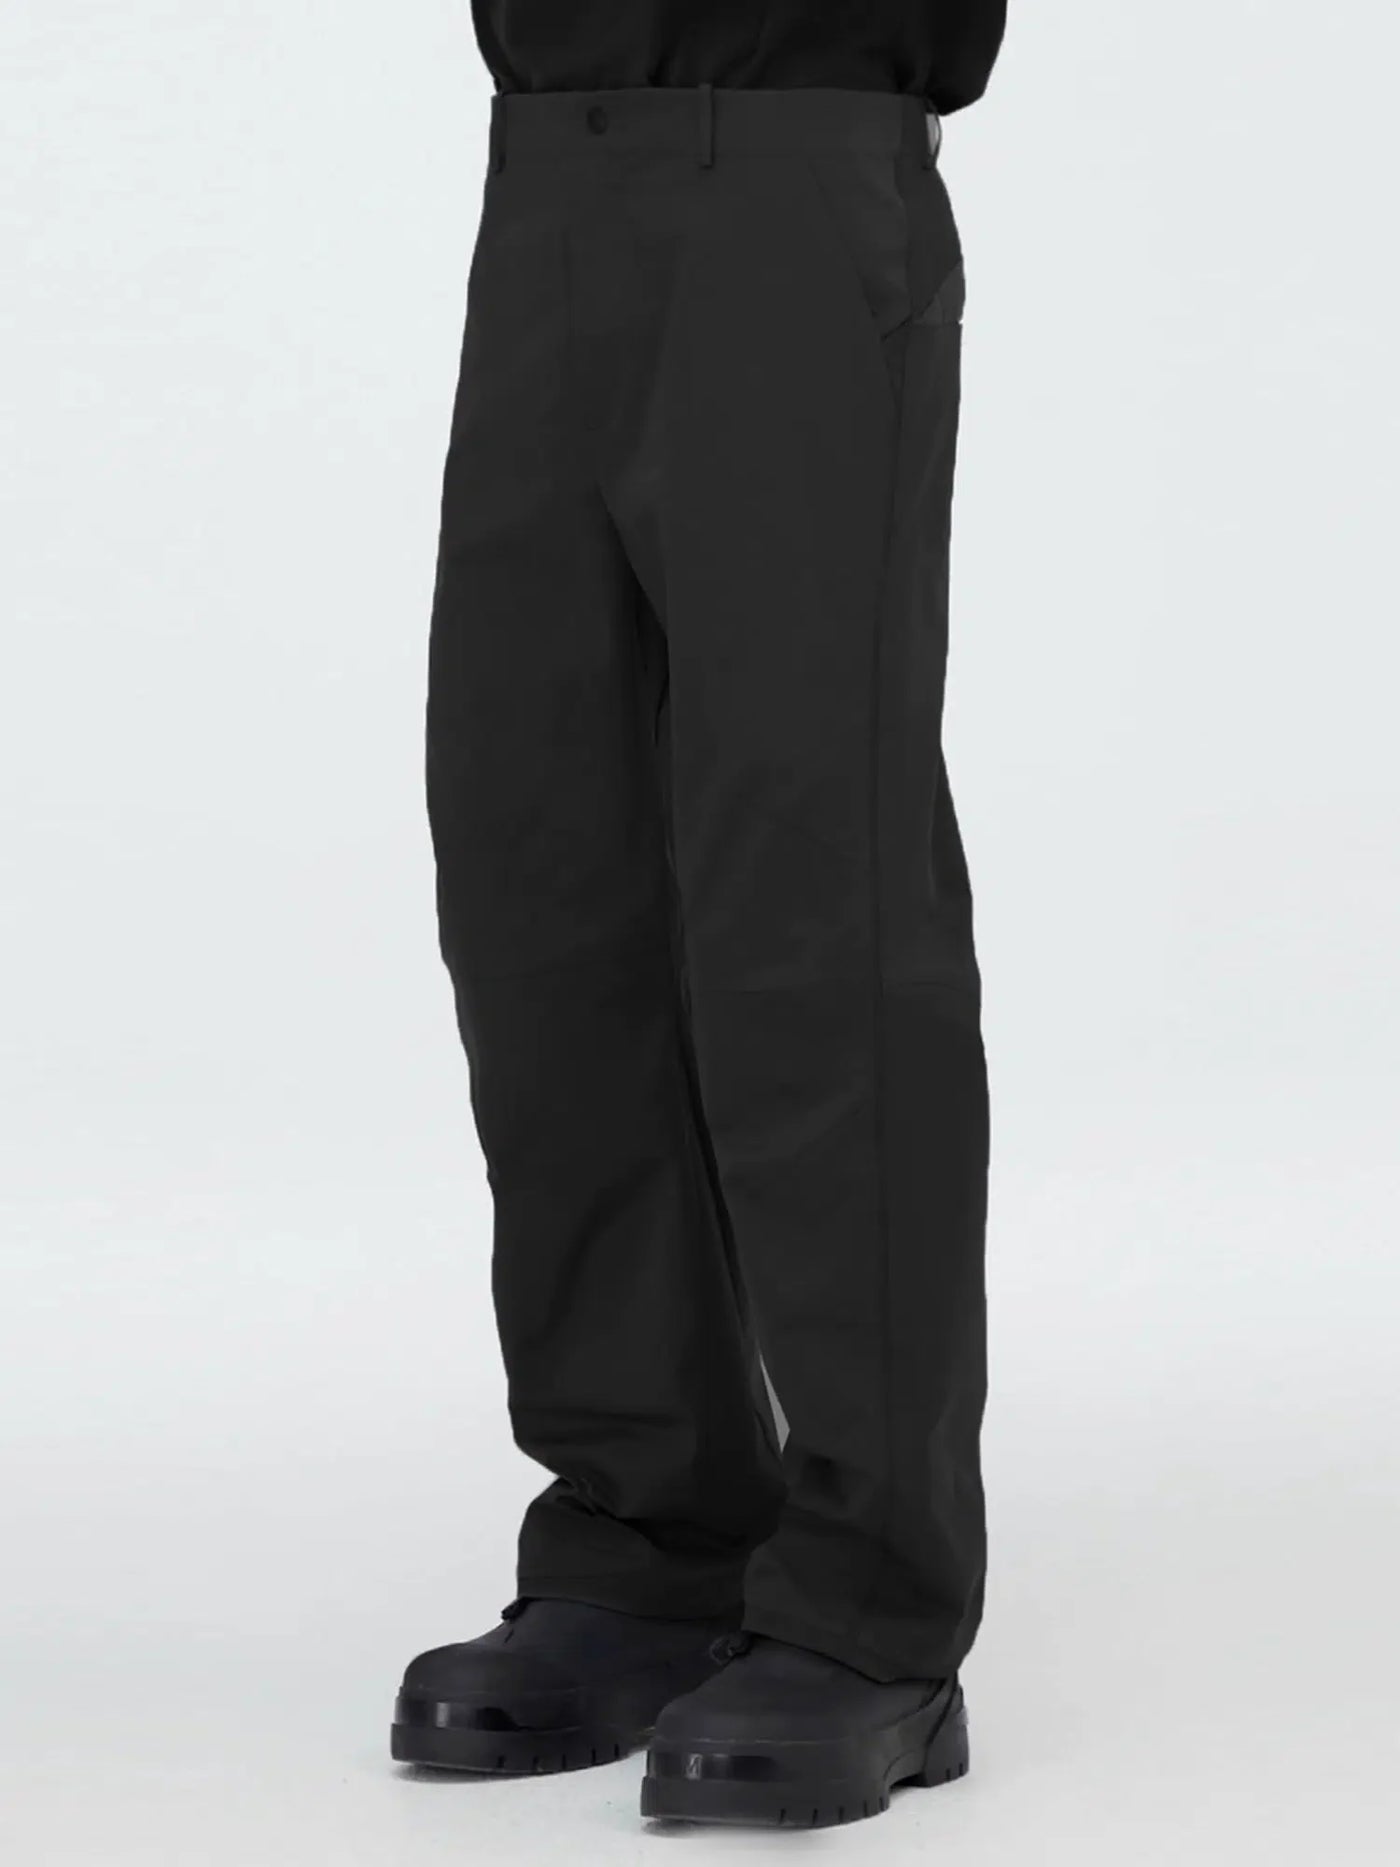 Straight Leg Versatile Pants Korean Street Fashion Pants By Decesolo Shop Online at OH Vault